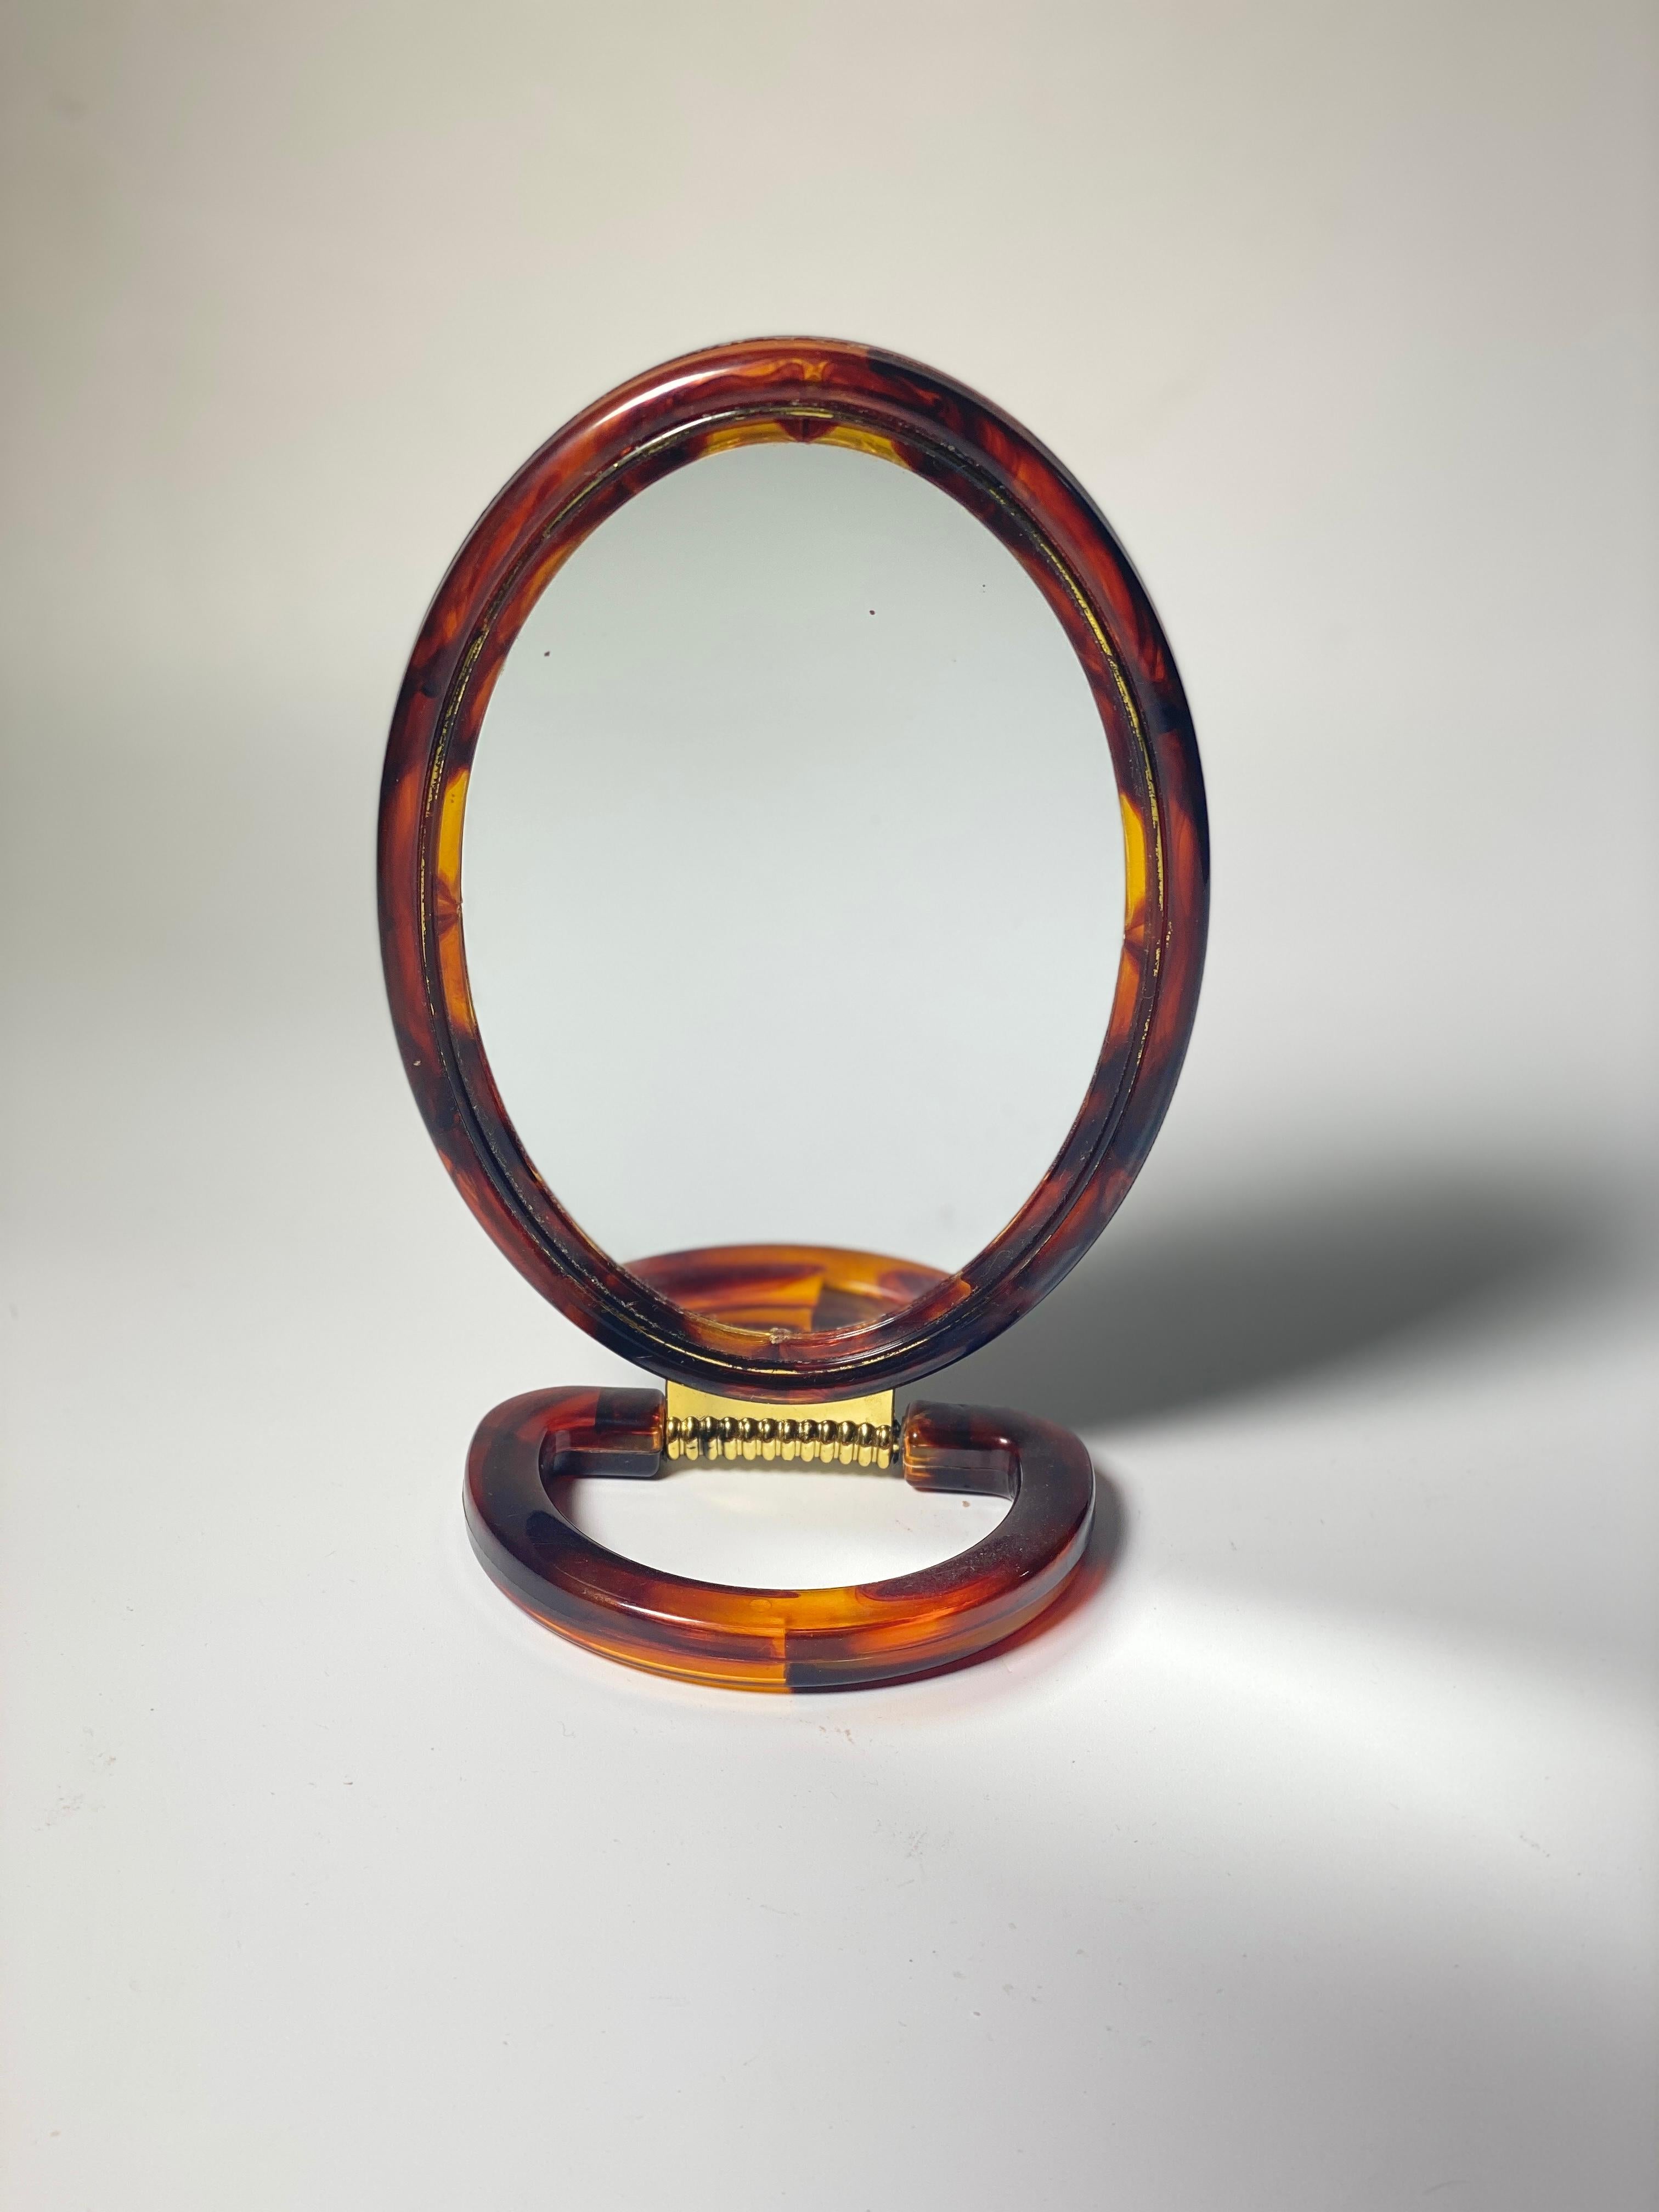 Dieser Spiegel ist ein Tischspiegel, ein Handspiegel. Aus schildpattähnlichem Kunststoff. Doppelseitiger Spiegel. Es wurde um 1970 in Frankreich hergestellt.